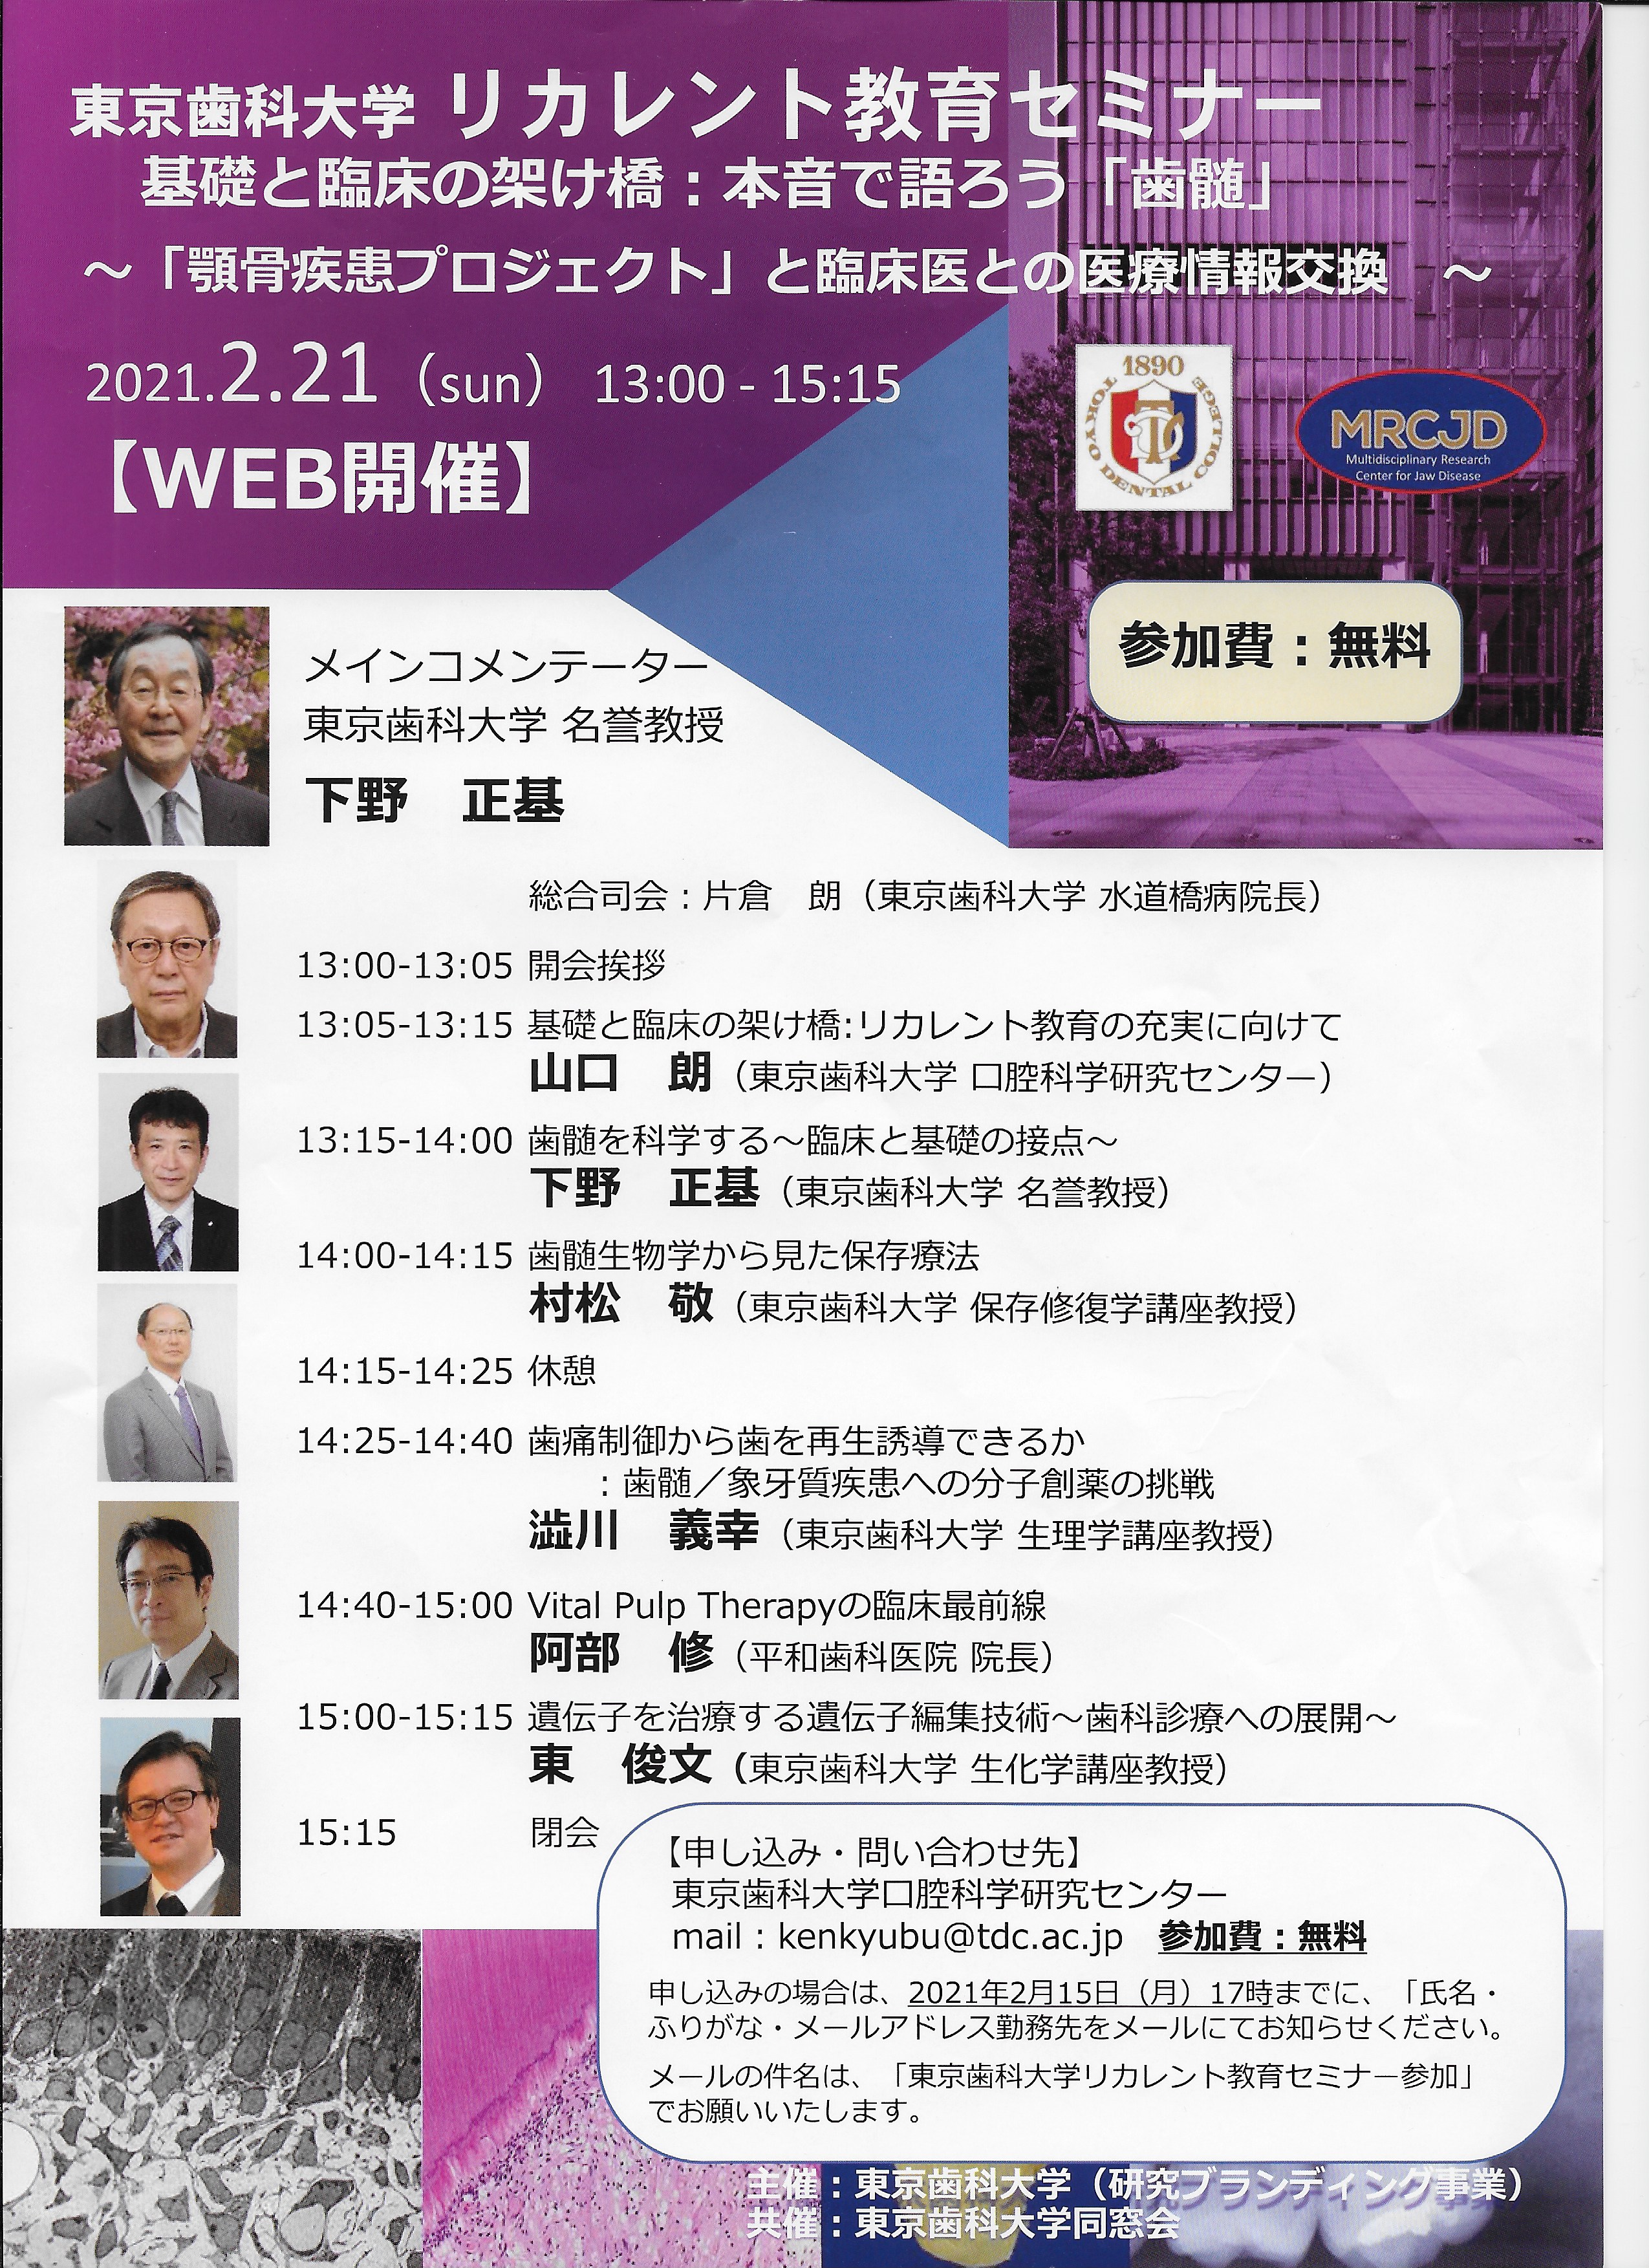 東京歯科大学リカレント教育セミナー